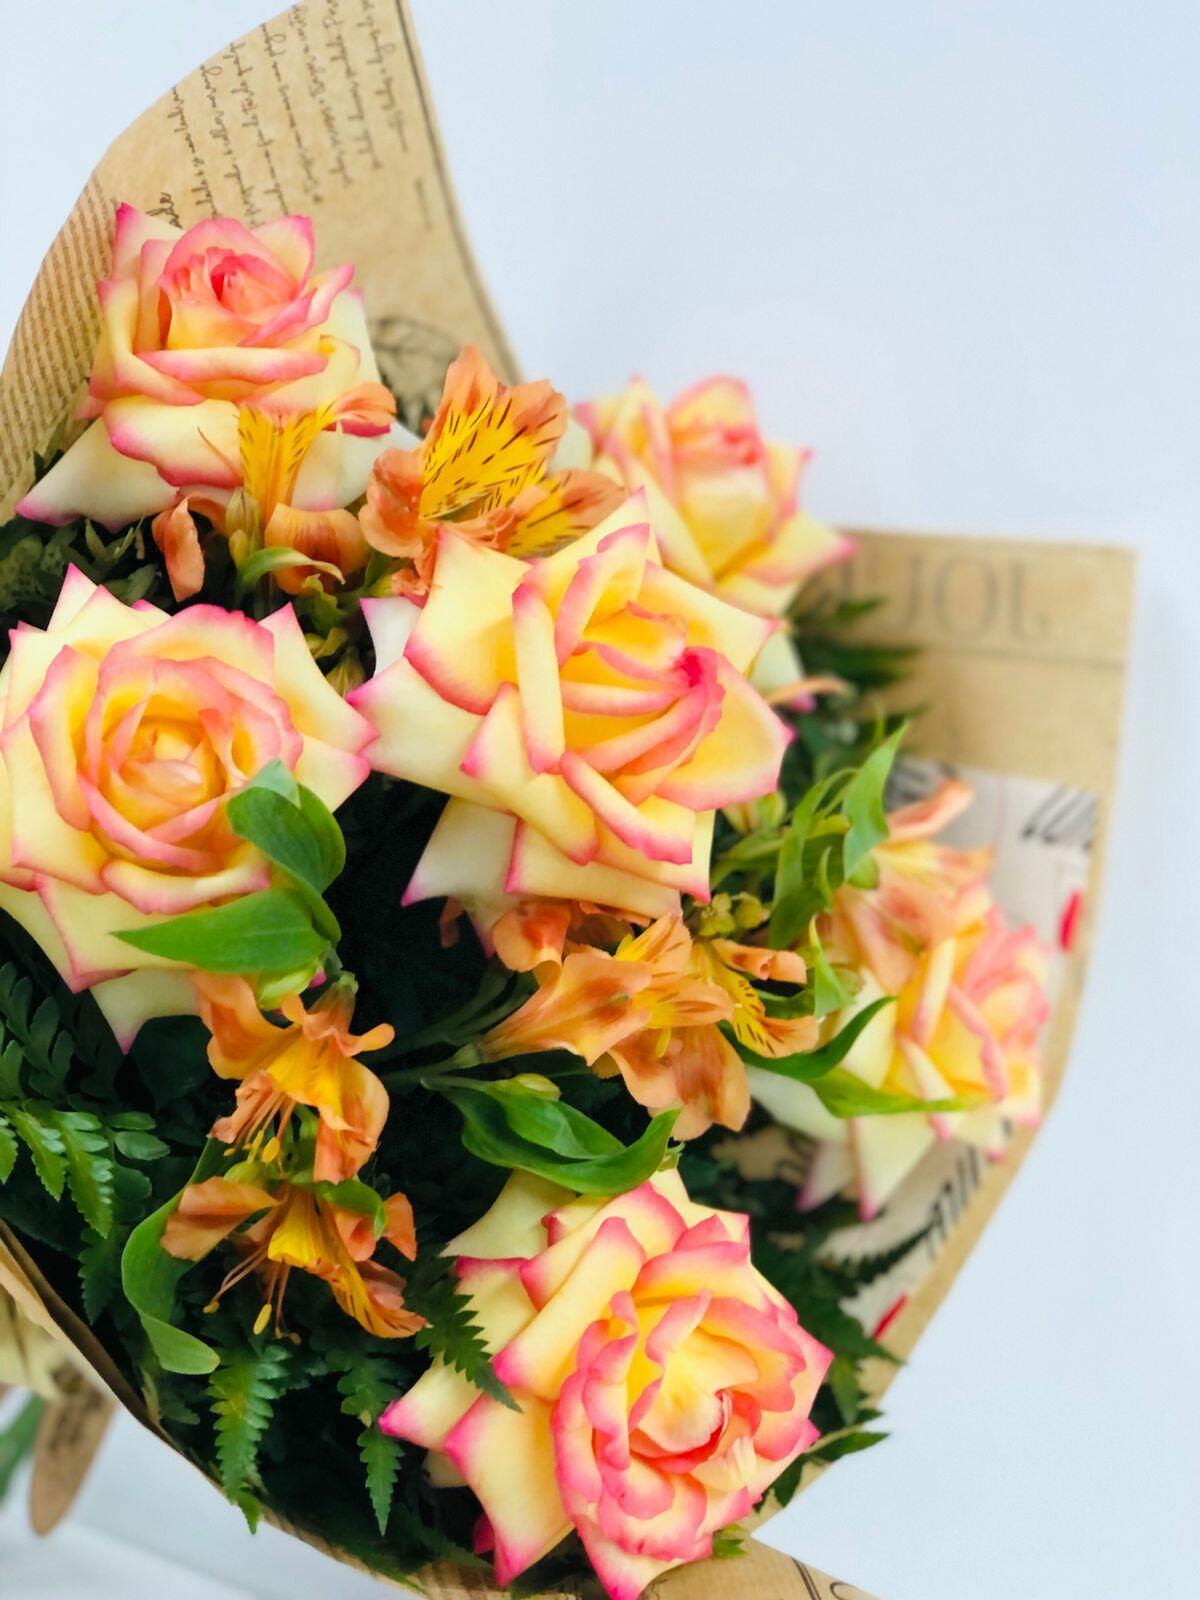 Comprar Buquê de 06 Rosas ambiance - R$140,00 - Flor De Laranjeira